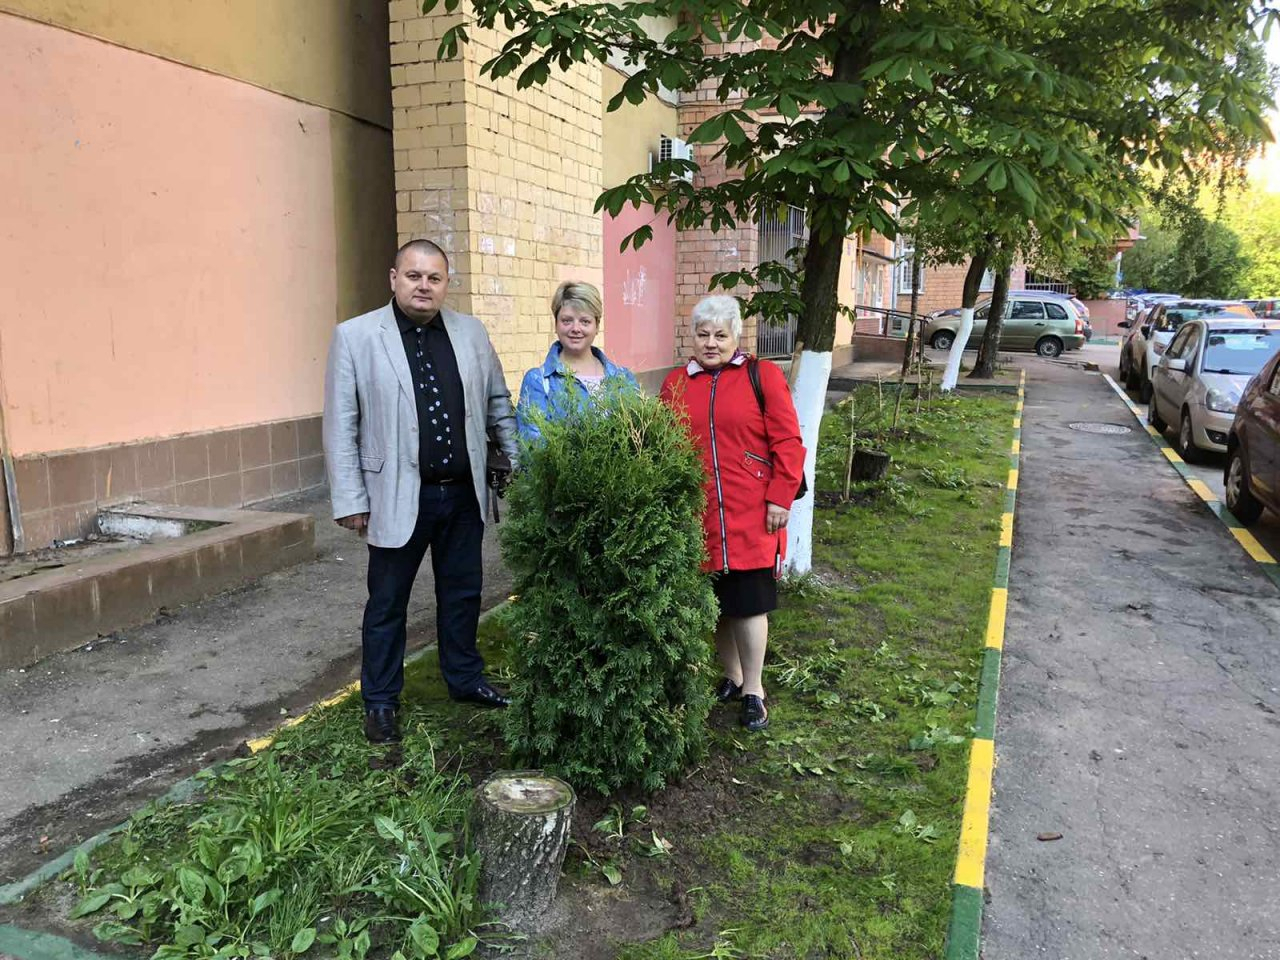 ДУКи пяти районов Нижнего Новгорода поздравили горожан с Международным днём соседей